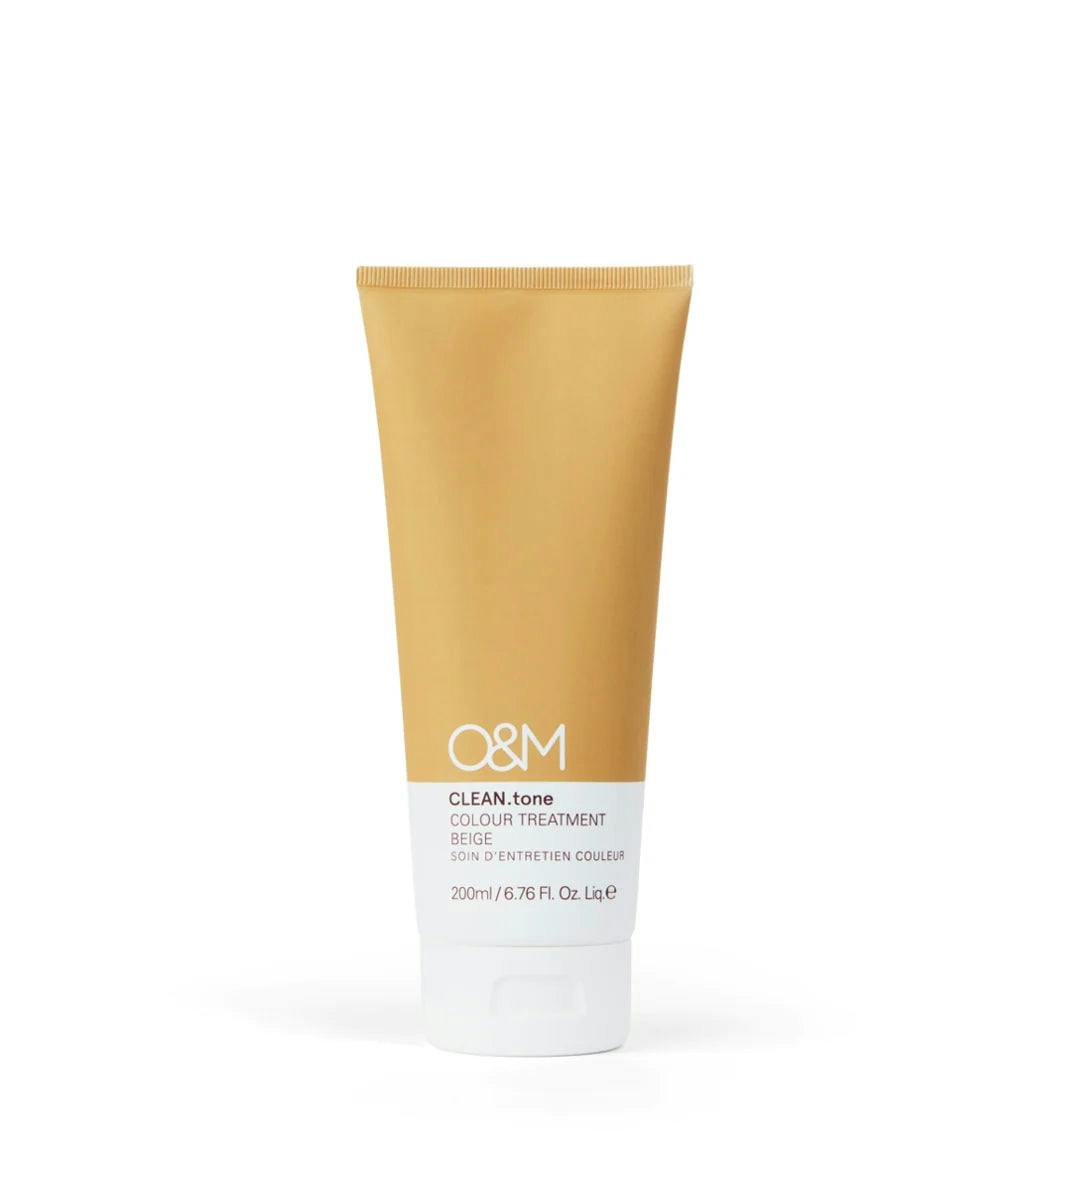 O&M Clean.tone Colour Treatment Beige 200ml